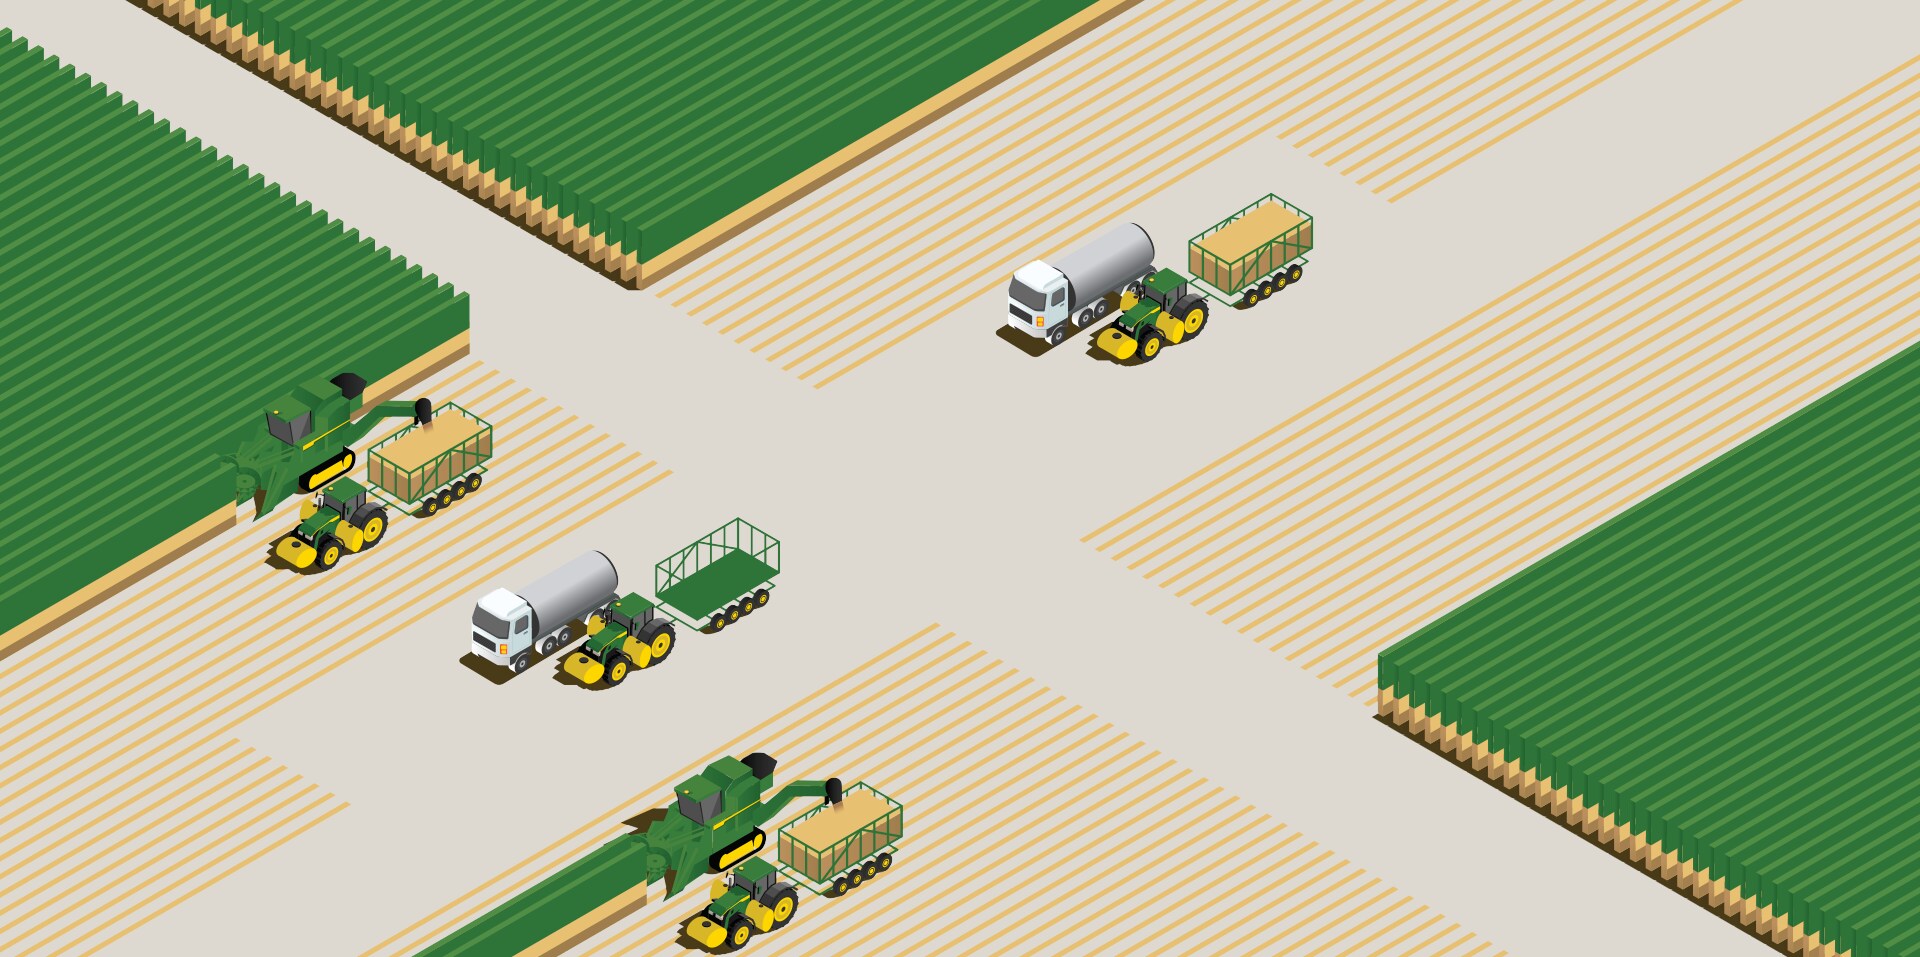 An illustration of John Deere equipment tending a sugar cane field